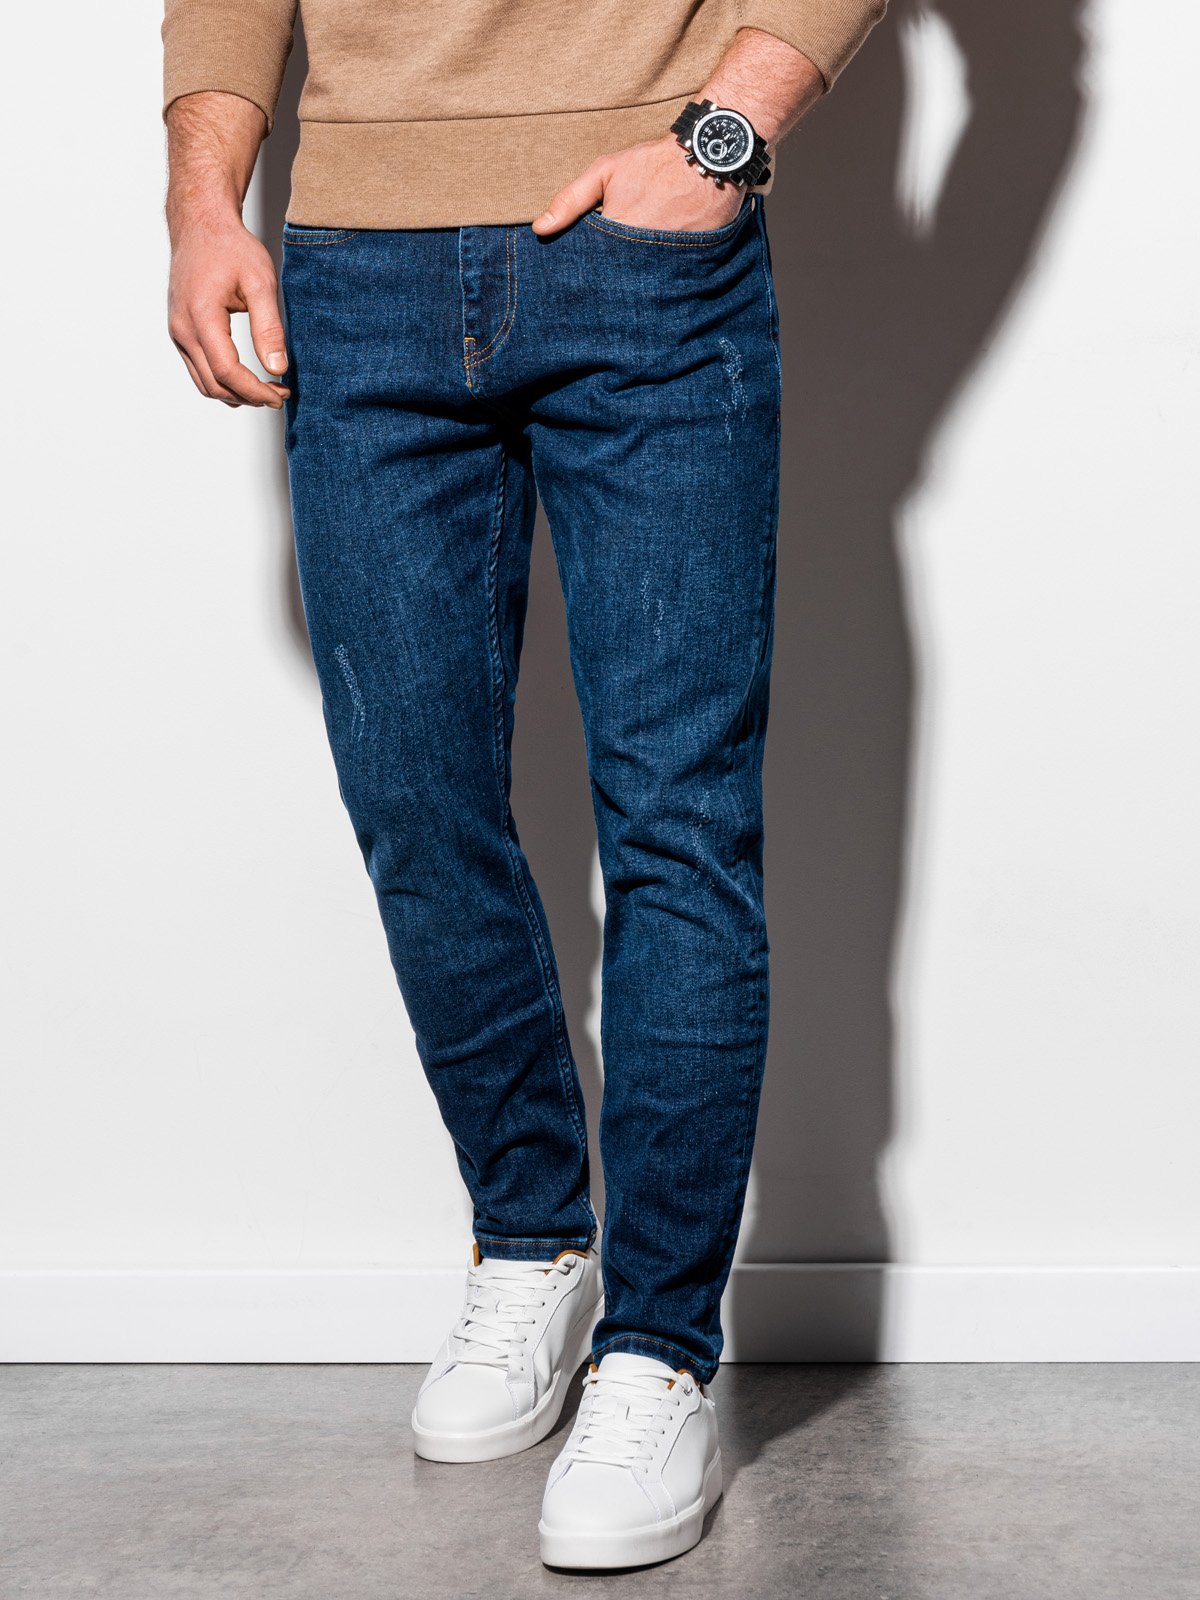 Buy Men Navy Dark Wash Slim Fit Jeans Online - 715891 | Van Heusen-lmd.edu.vn